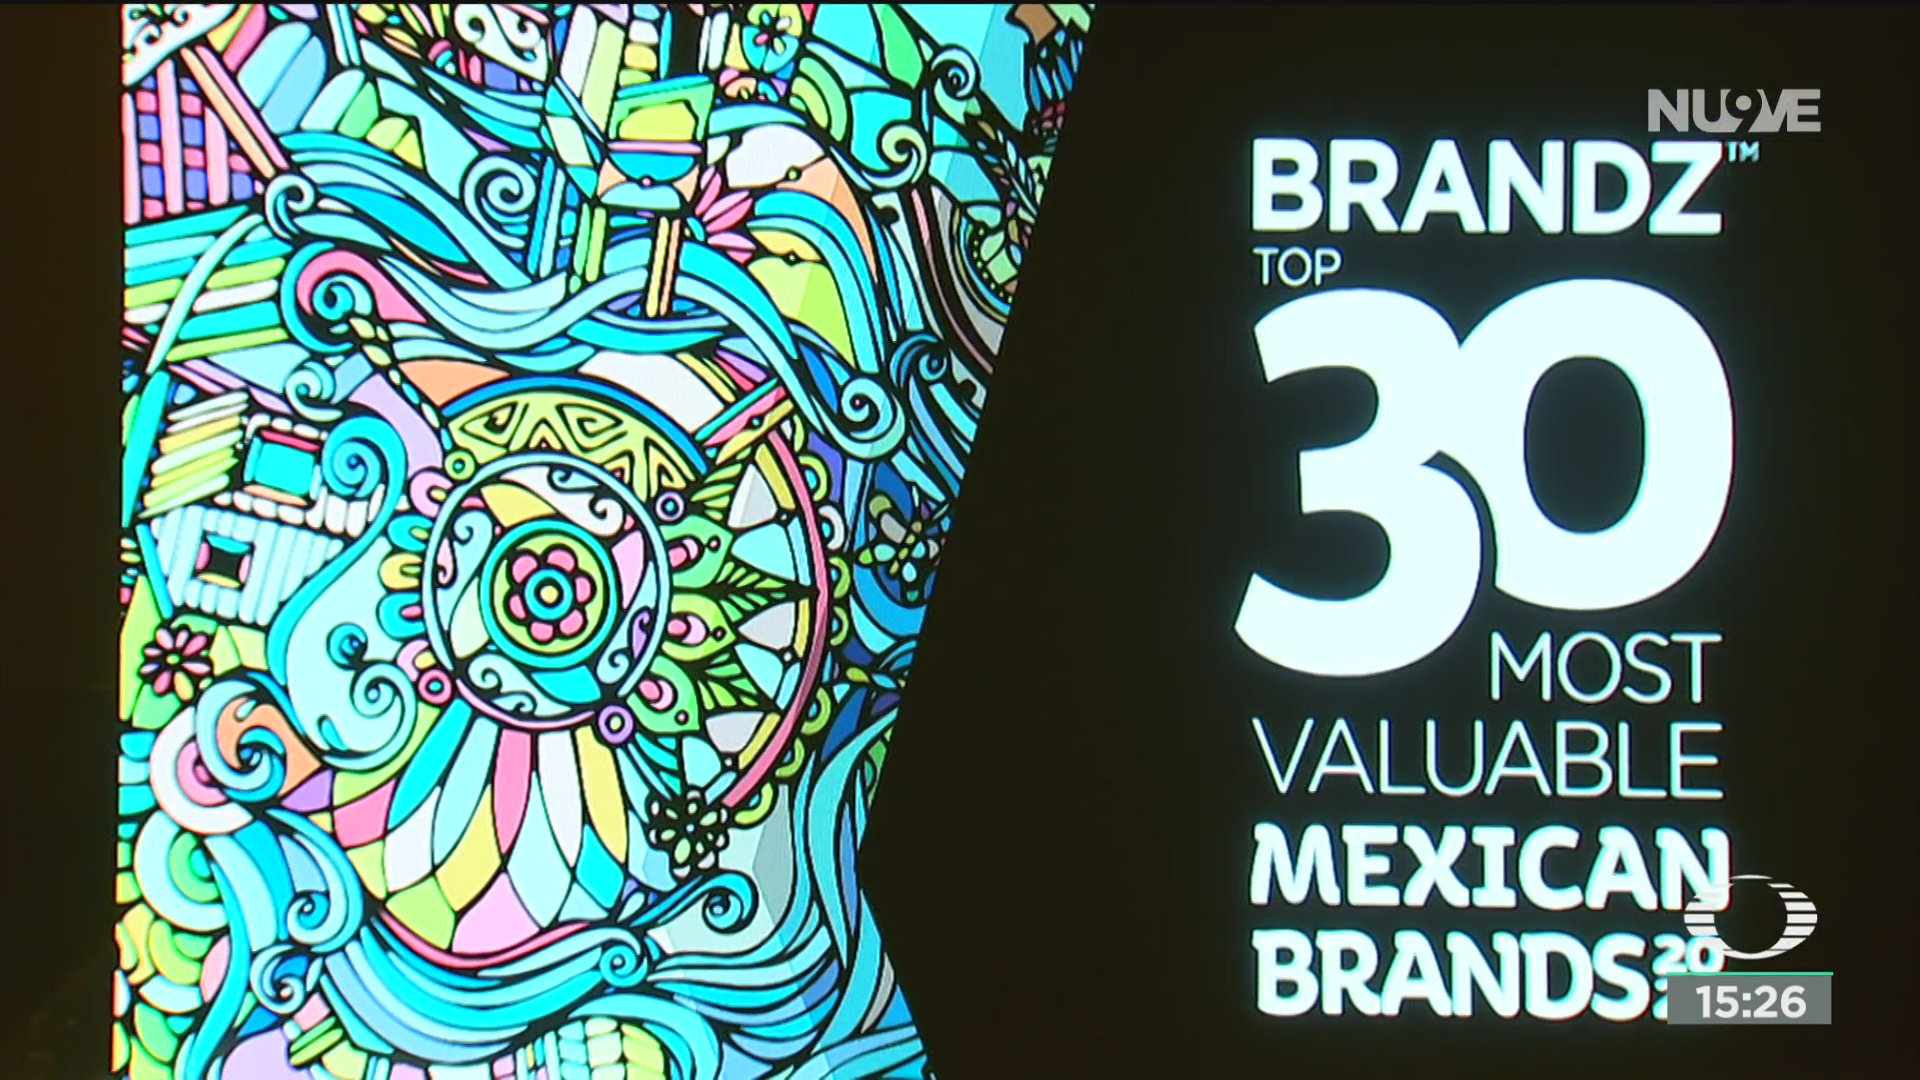 FOTO: televisa una de las 5 empresas mas valiosas de mexico